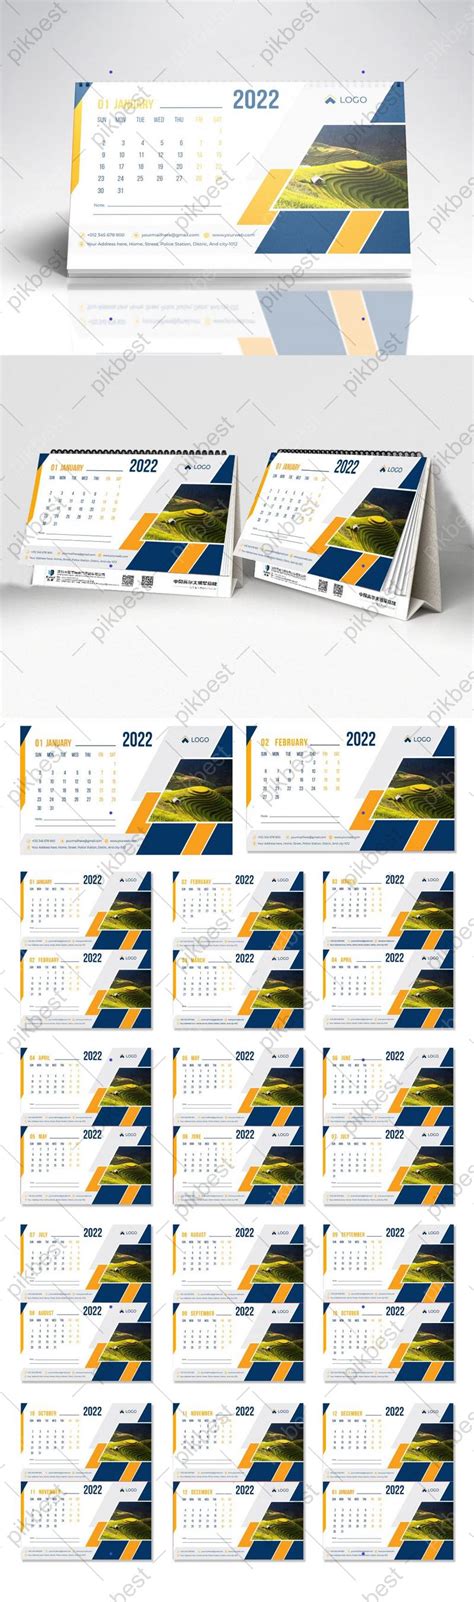 Gambar Kalender Meja Baru 2022 Templat Desain Siap Cetak Eps Unduhan